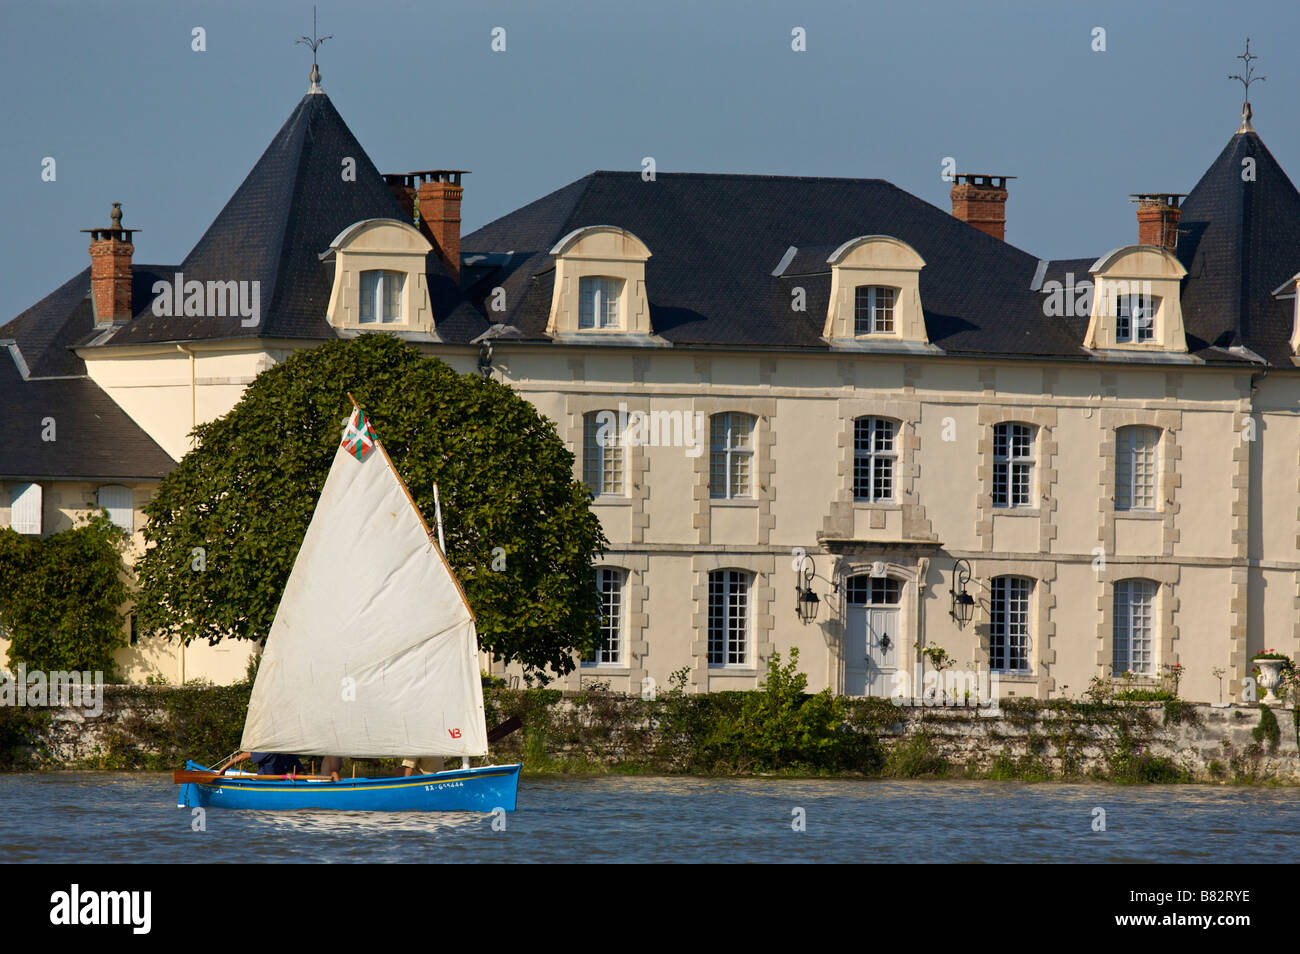 Petit bateau à voile sur l'Adour France Banque D'Images